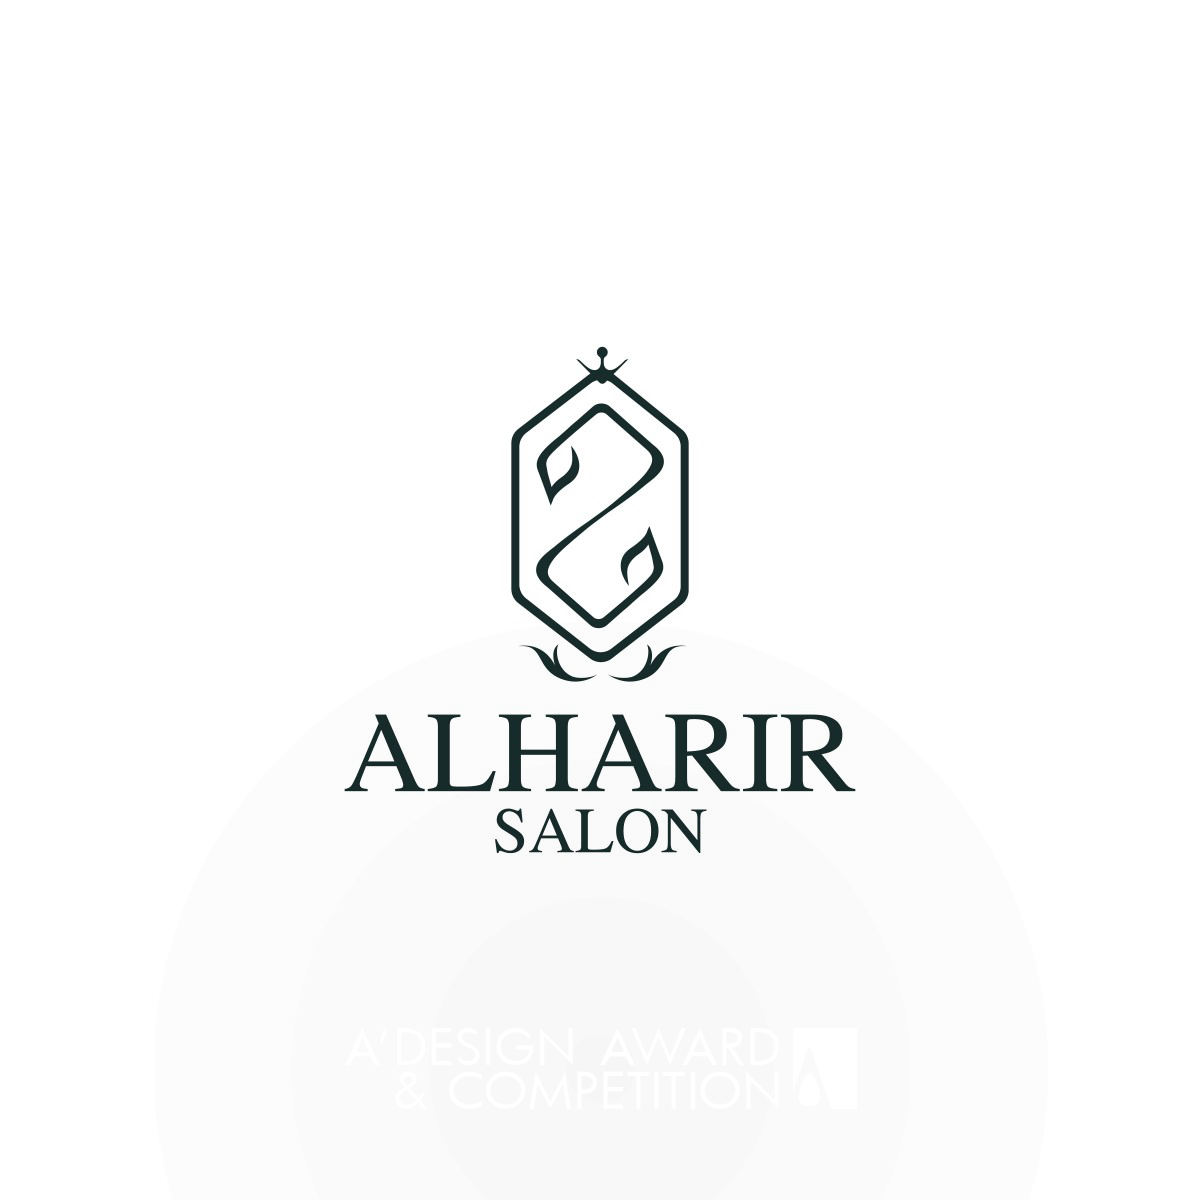 Alharir Salon : Un design de marque de salon de beauté luxueux